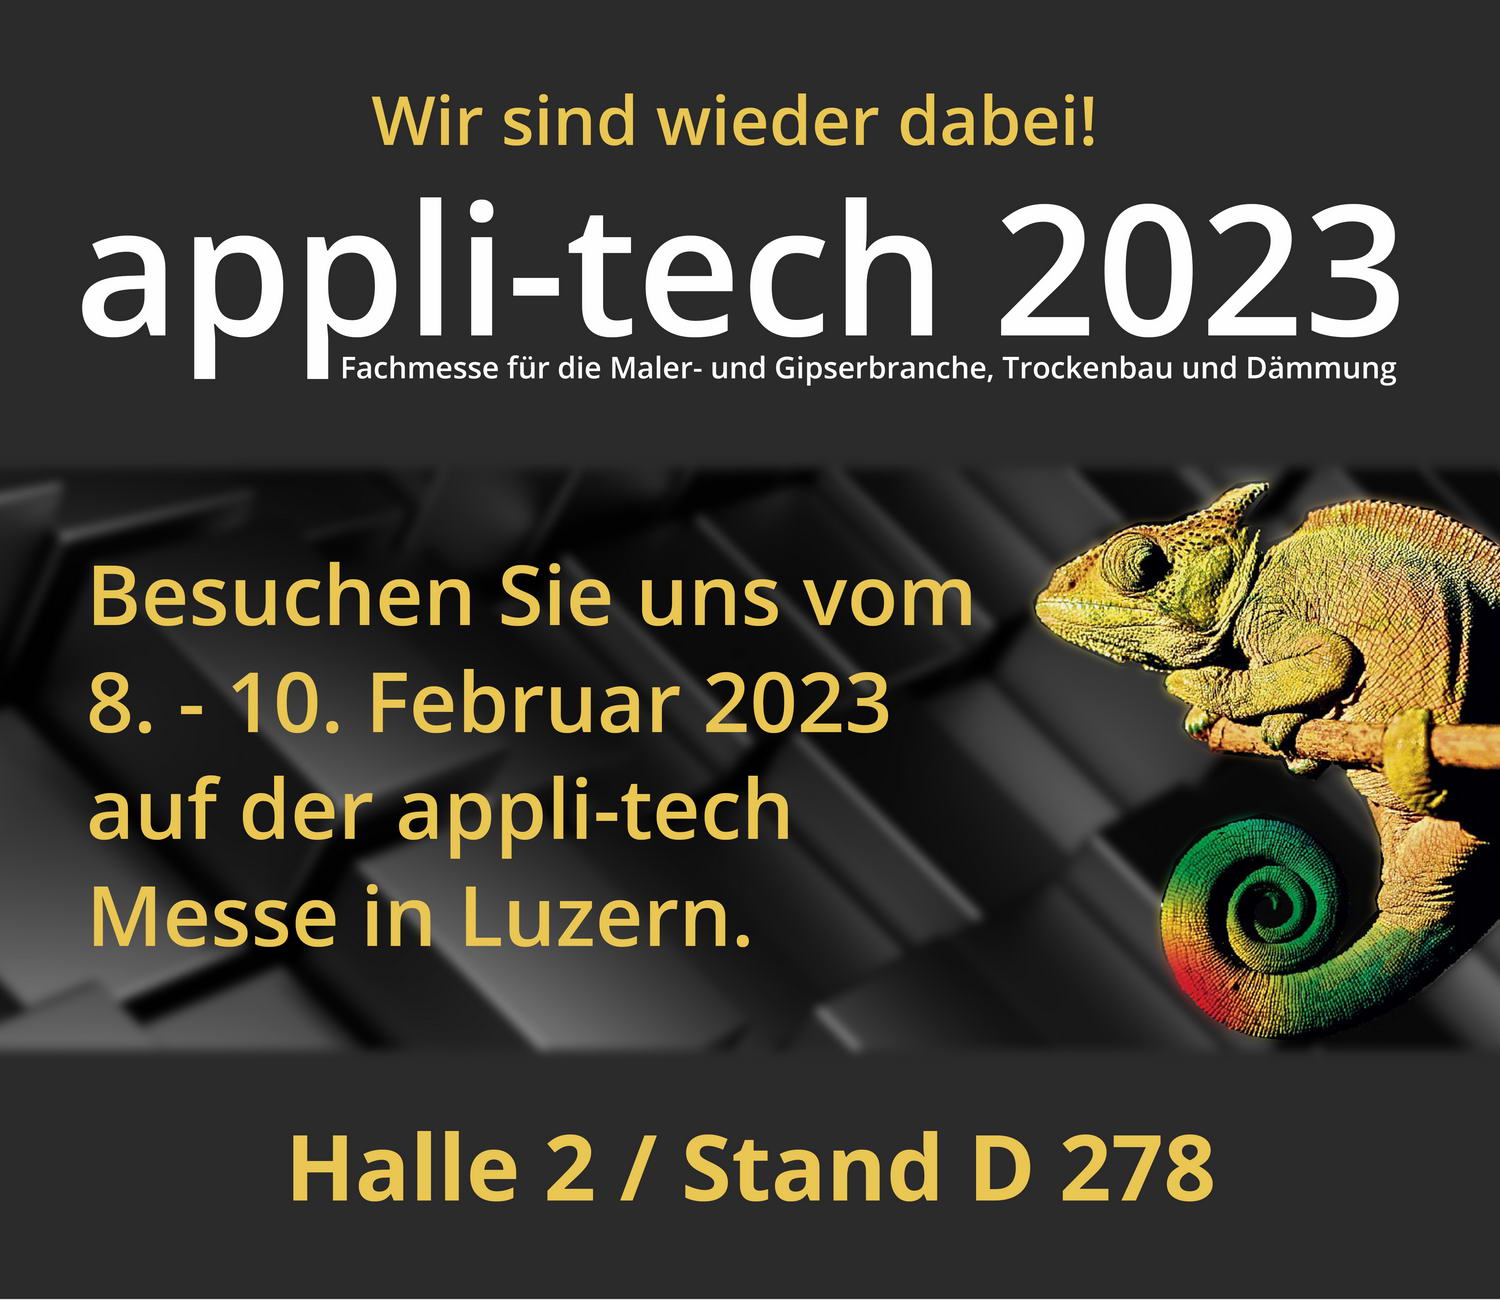 appli-tech 2023